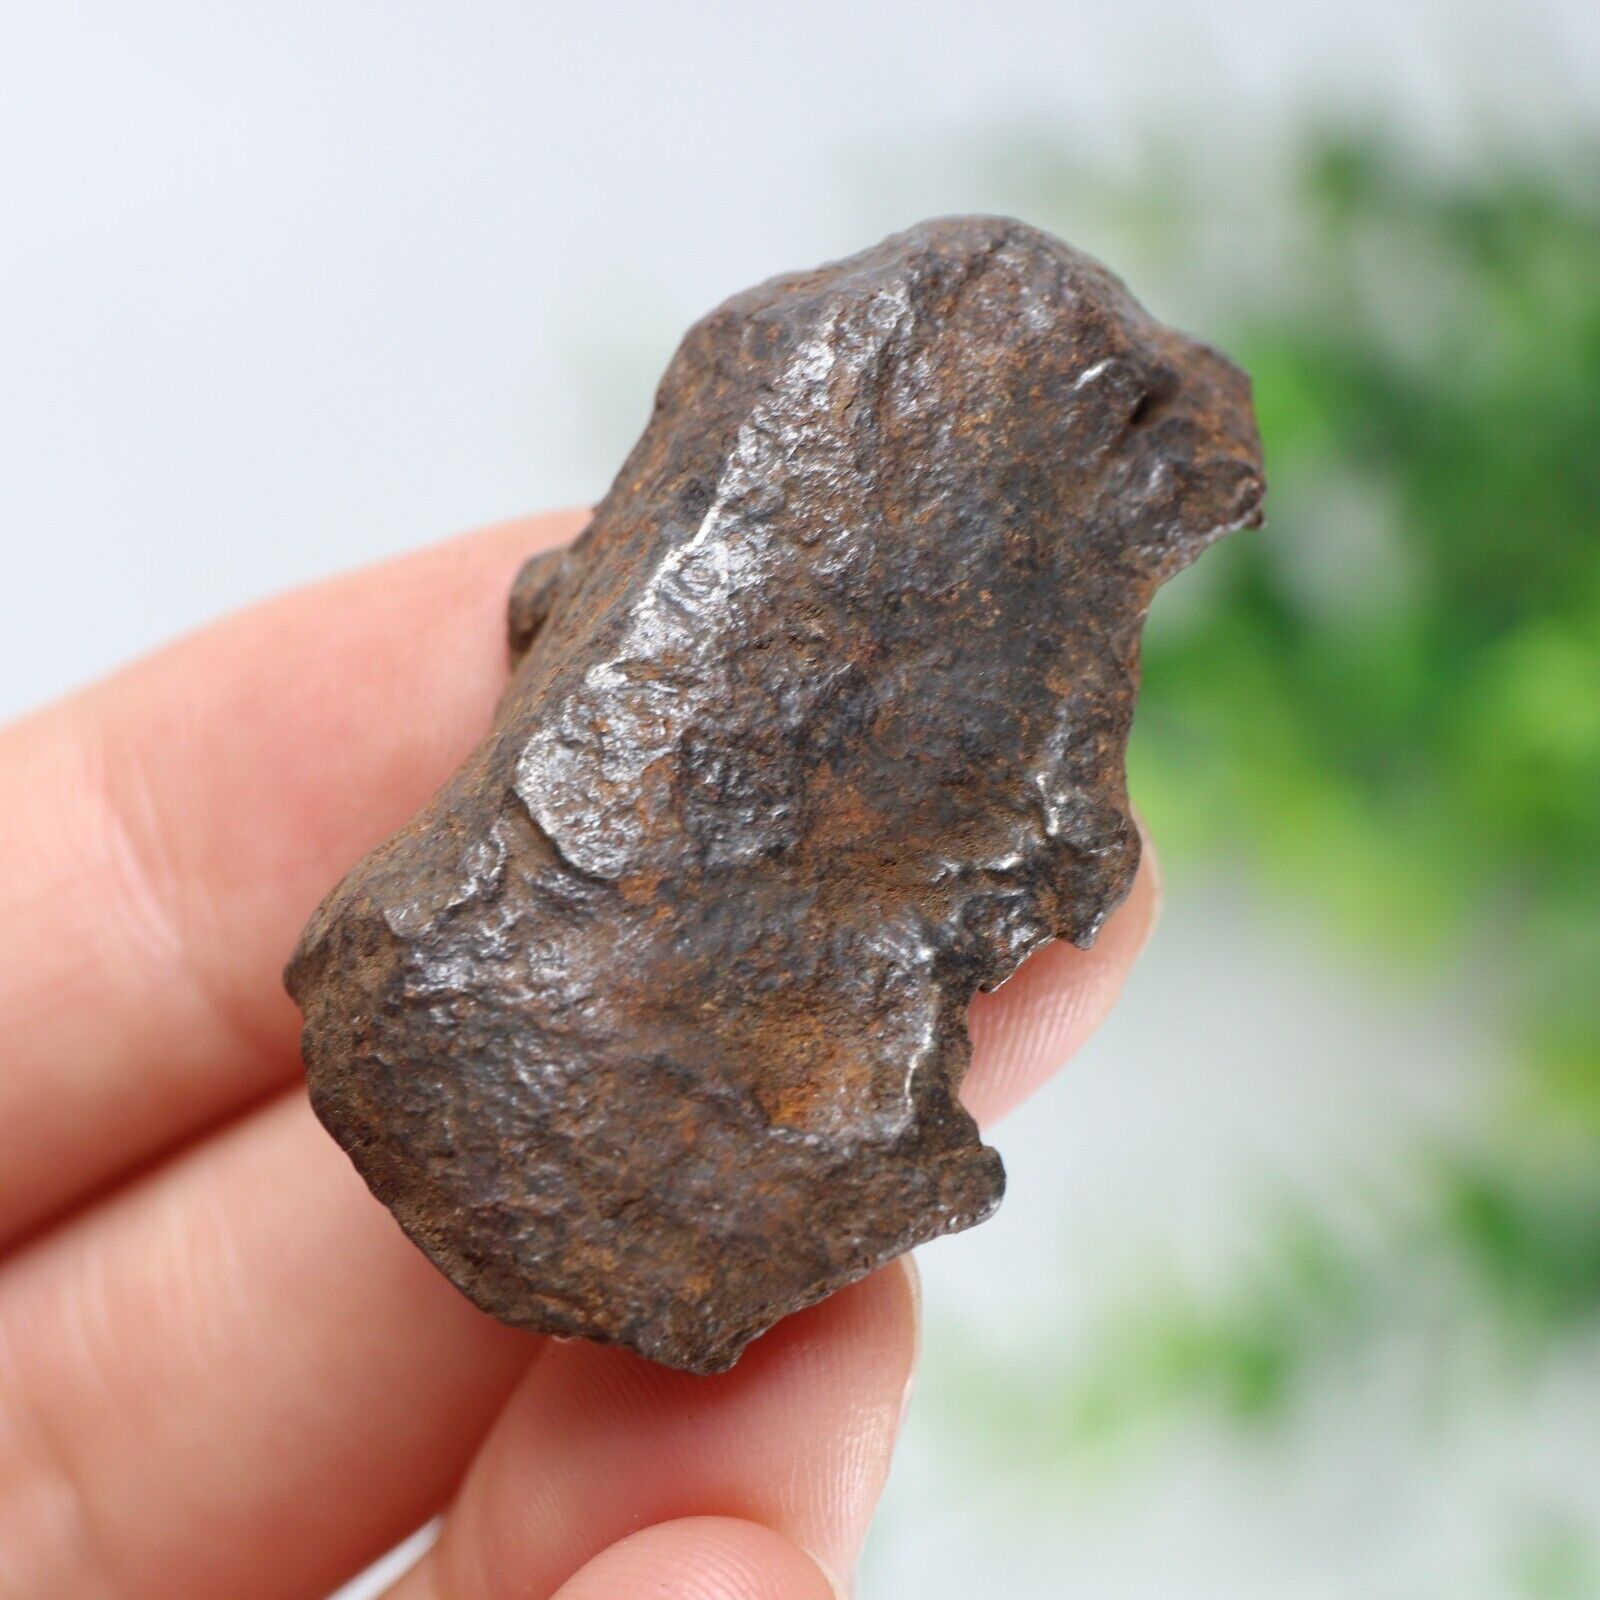 33g Gebel Kamil iron meteorite, from Egypt, Space Gift, meteorite, specimen R973